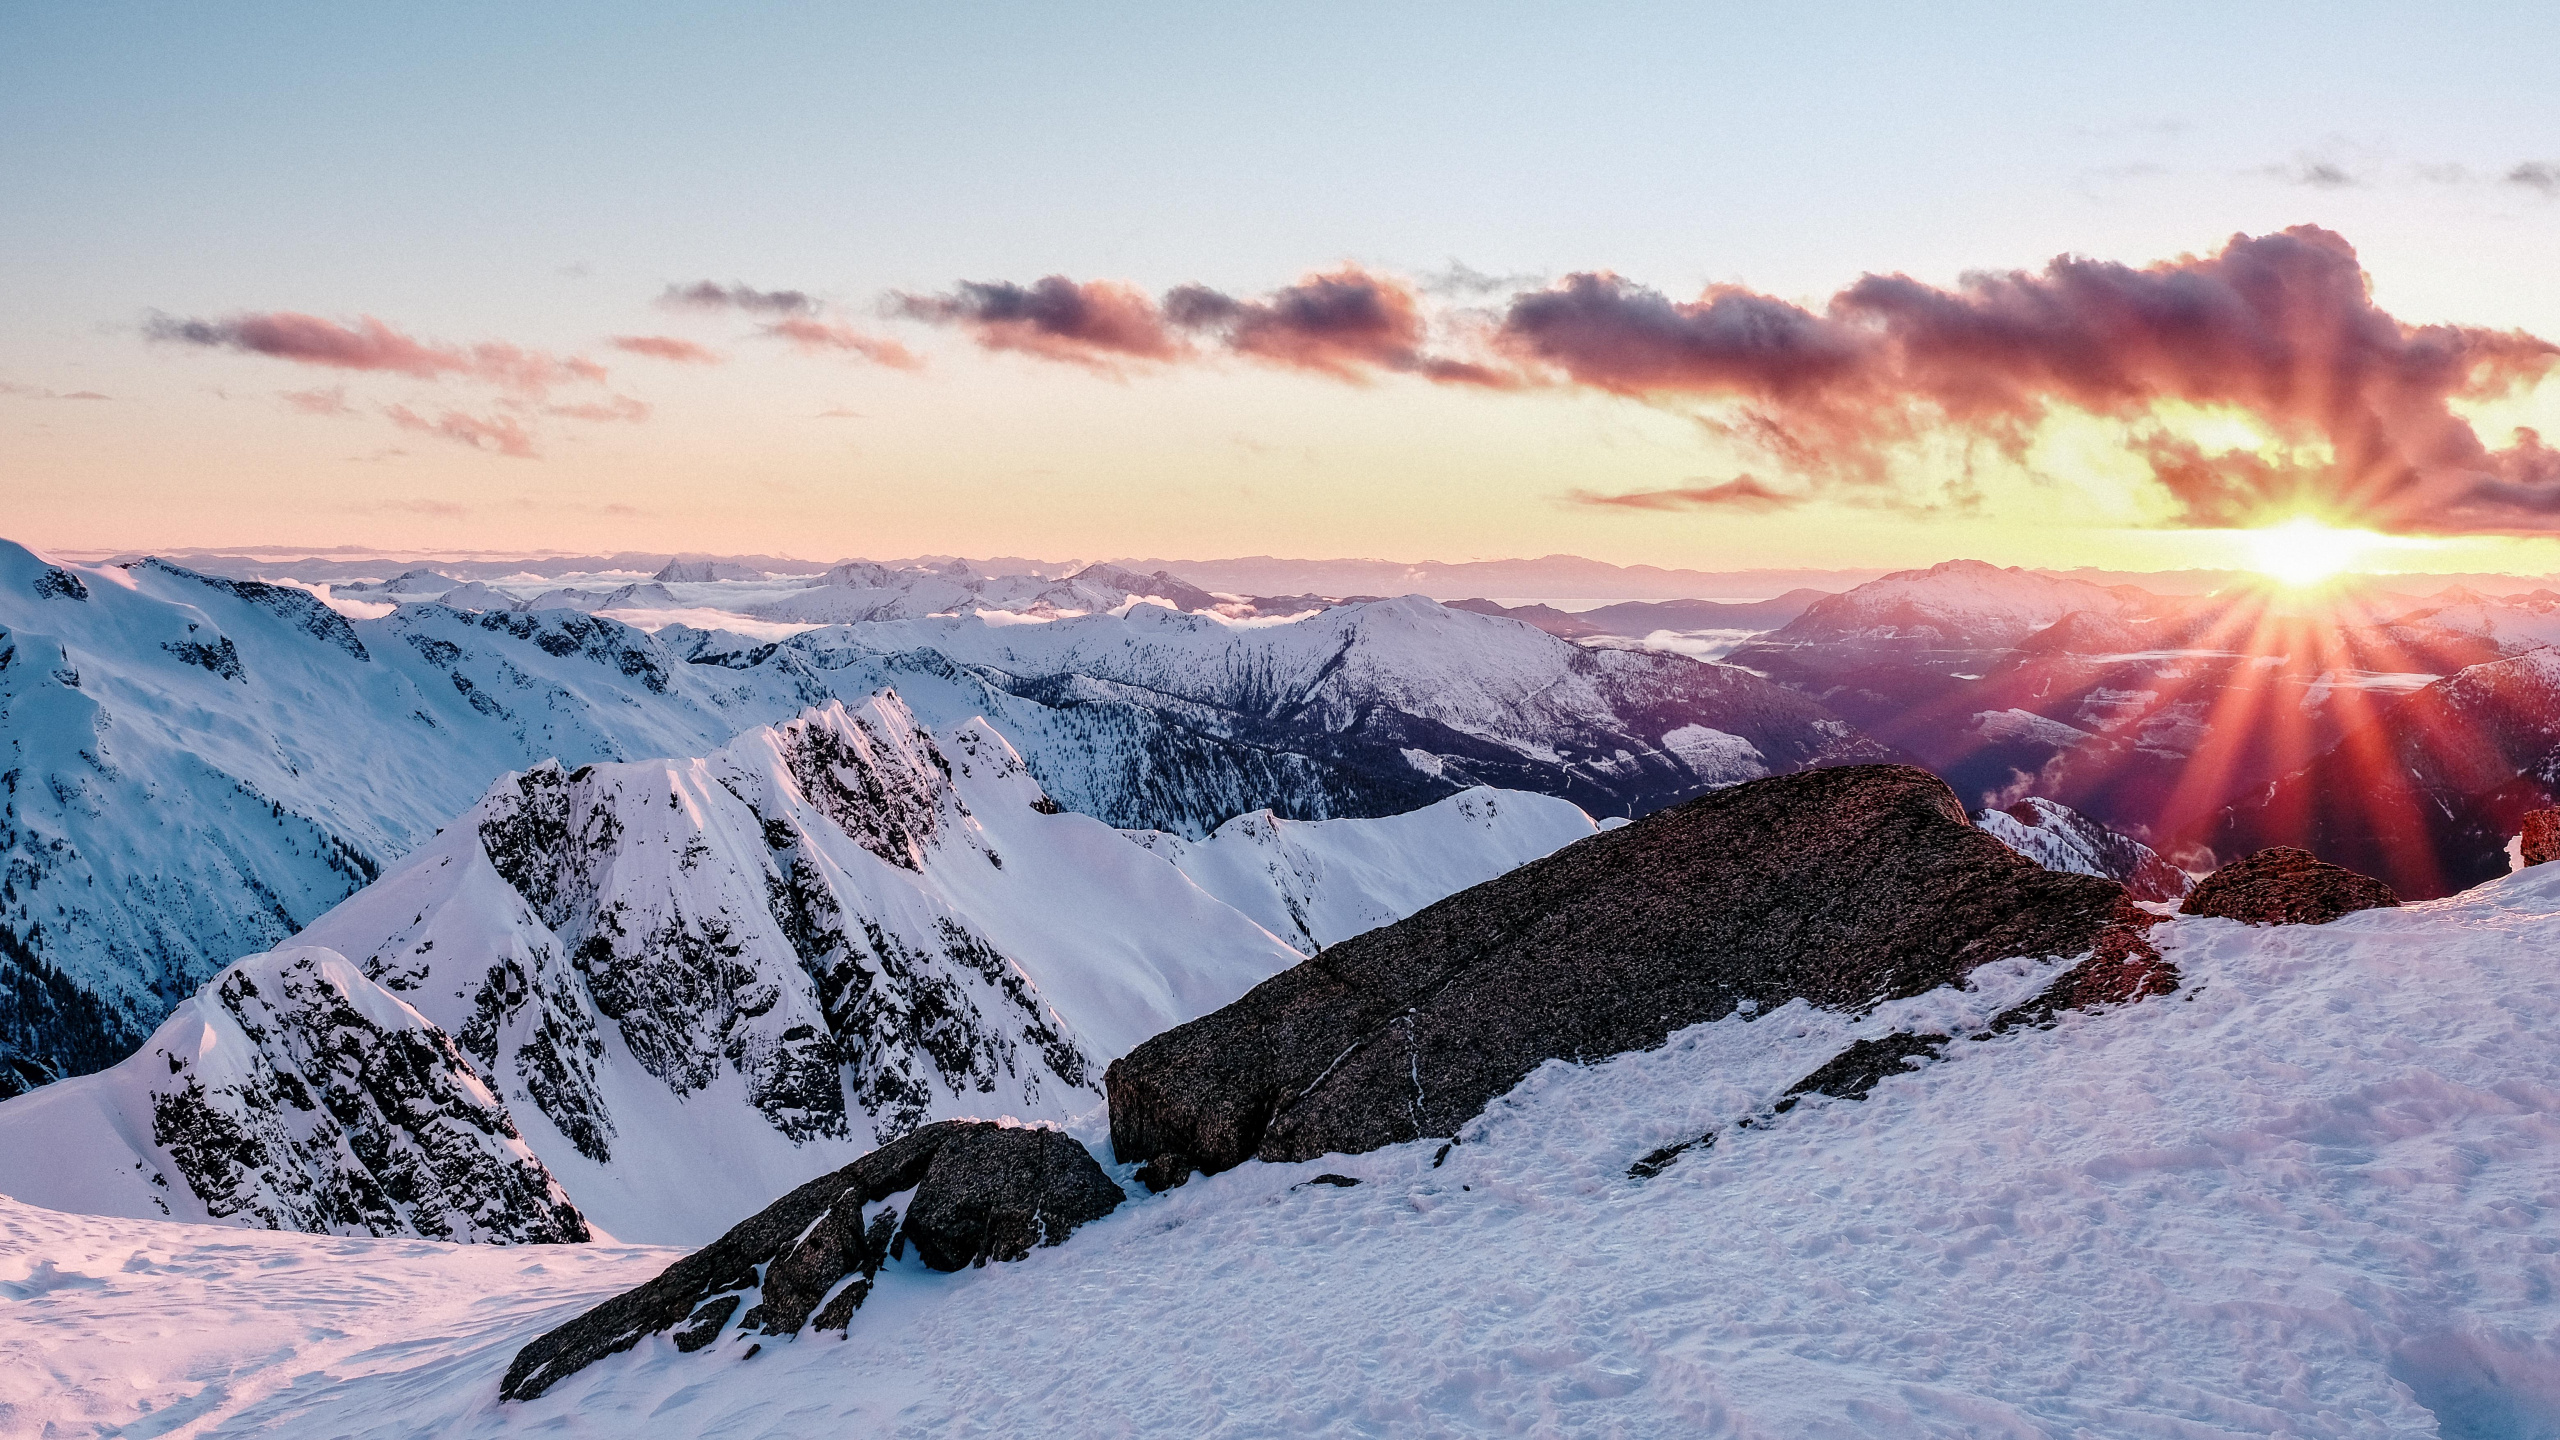 Bergigen Landschaftsformen, Schnee, Winter, Bergkette, Natur. Wallpaper in 2560x1440 Resolution